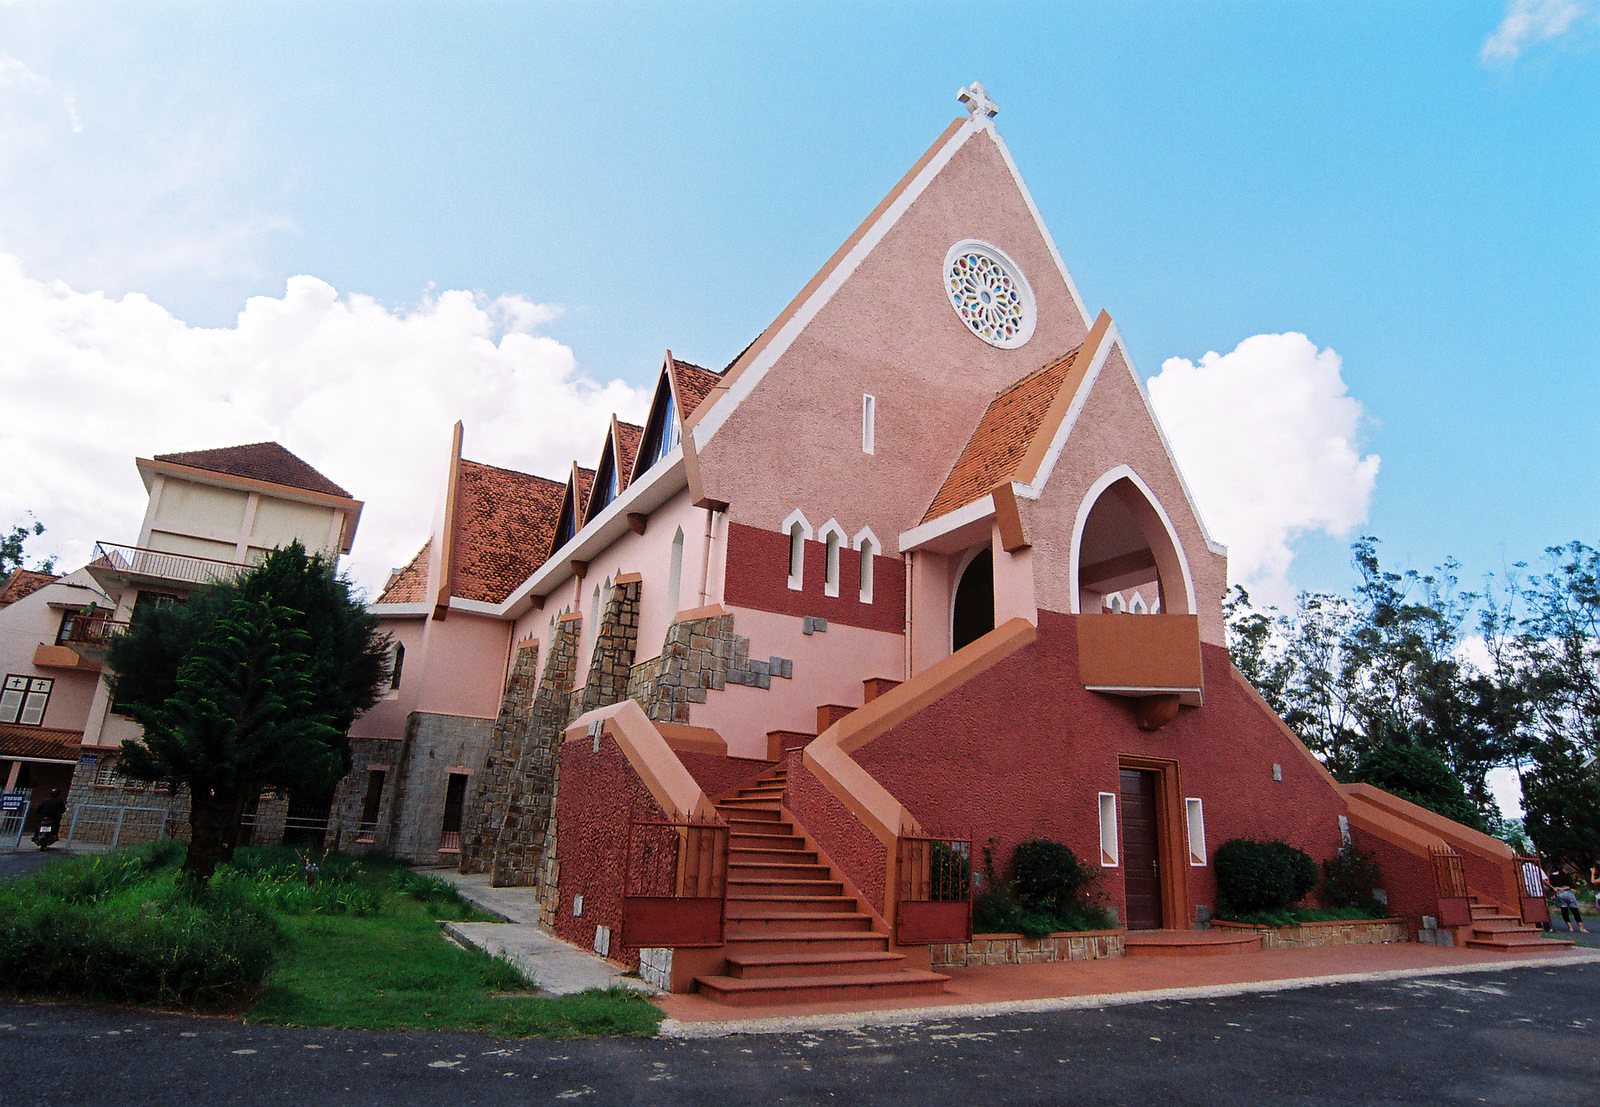                           Chiêm ngưỡng hai nhà thờ có kiến trúc độc đáo ở Đà Lạt                      